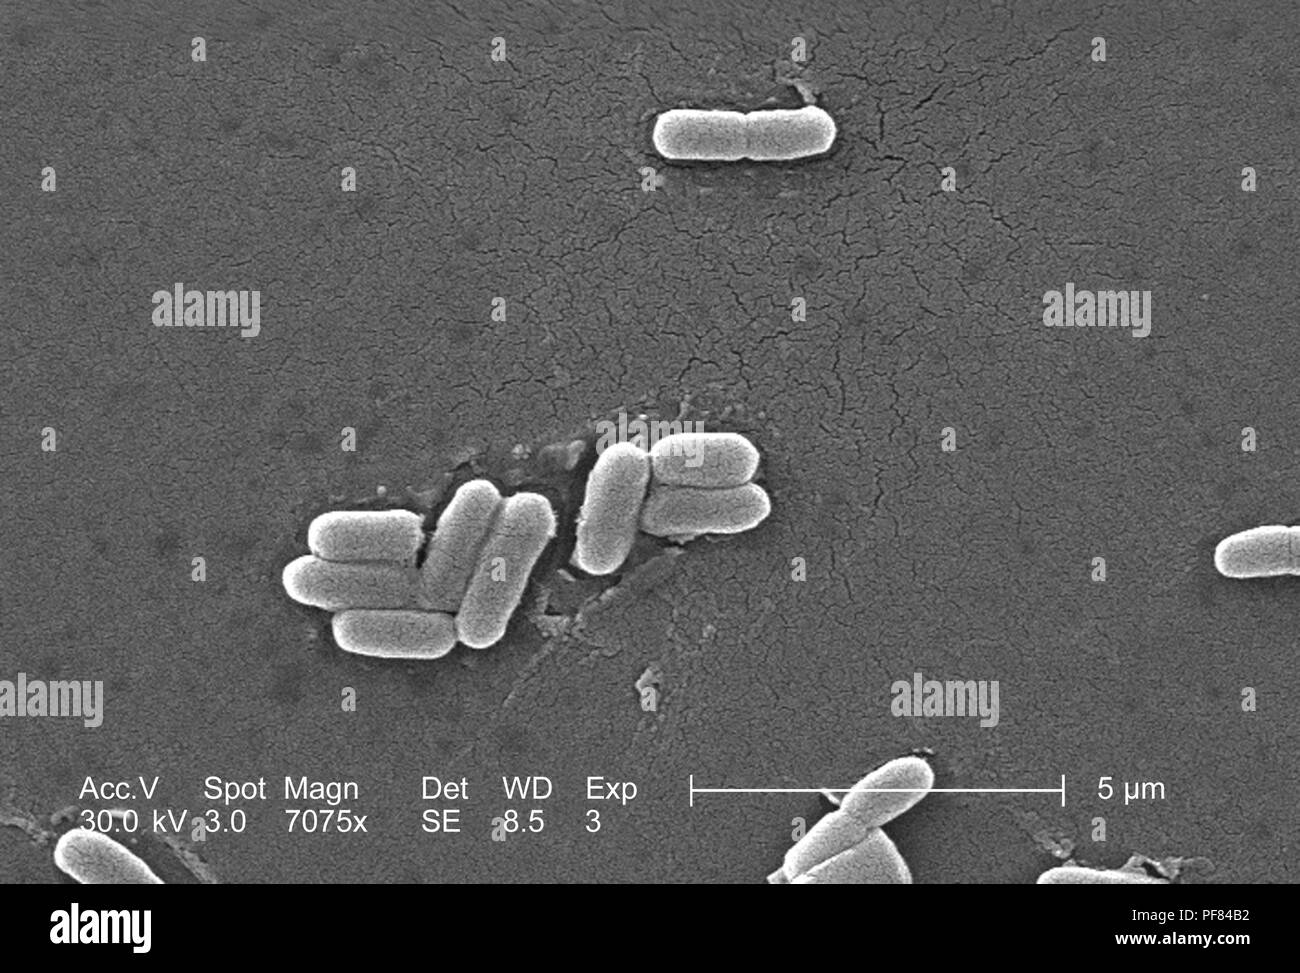 Gram négatif bactéries Escherichia coli de la souche O157:H7, révélé dans le 7075x amplifiés en microscopie électronique à balayage (MEB) de droit, 2006. Image courtoisie Centres for Disease Control (CDC) / National Escherichia, Shigella, Vibrio Unité de référence à la CDC. () Banque D'Images